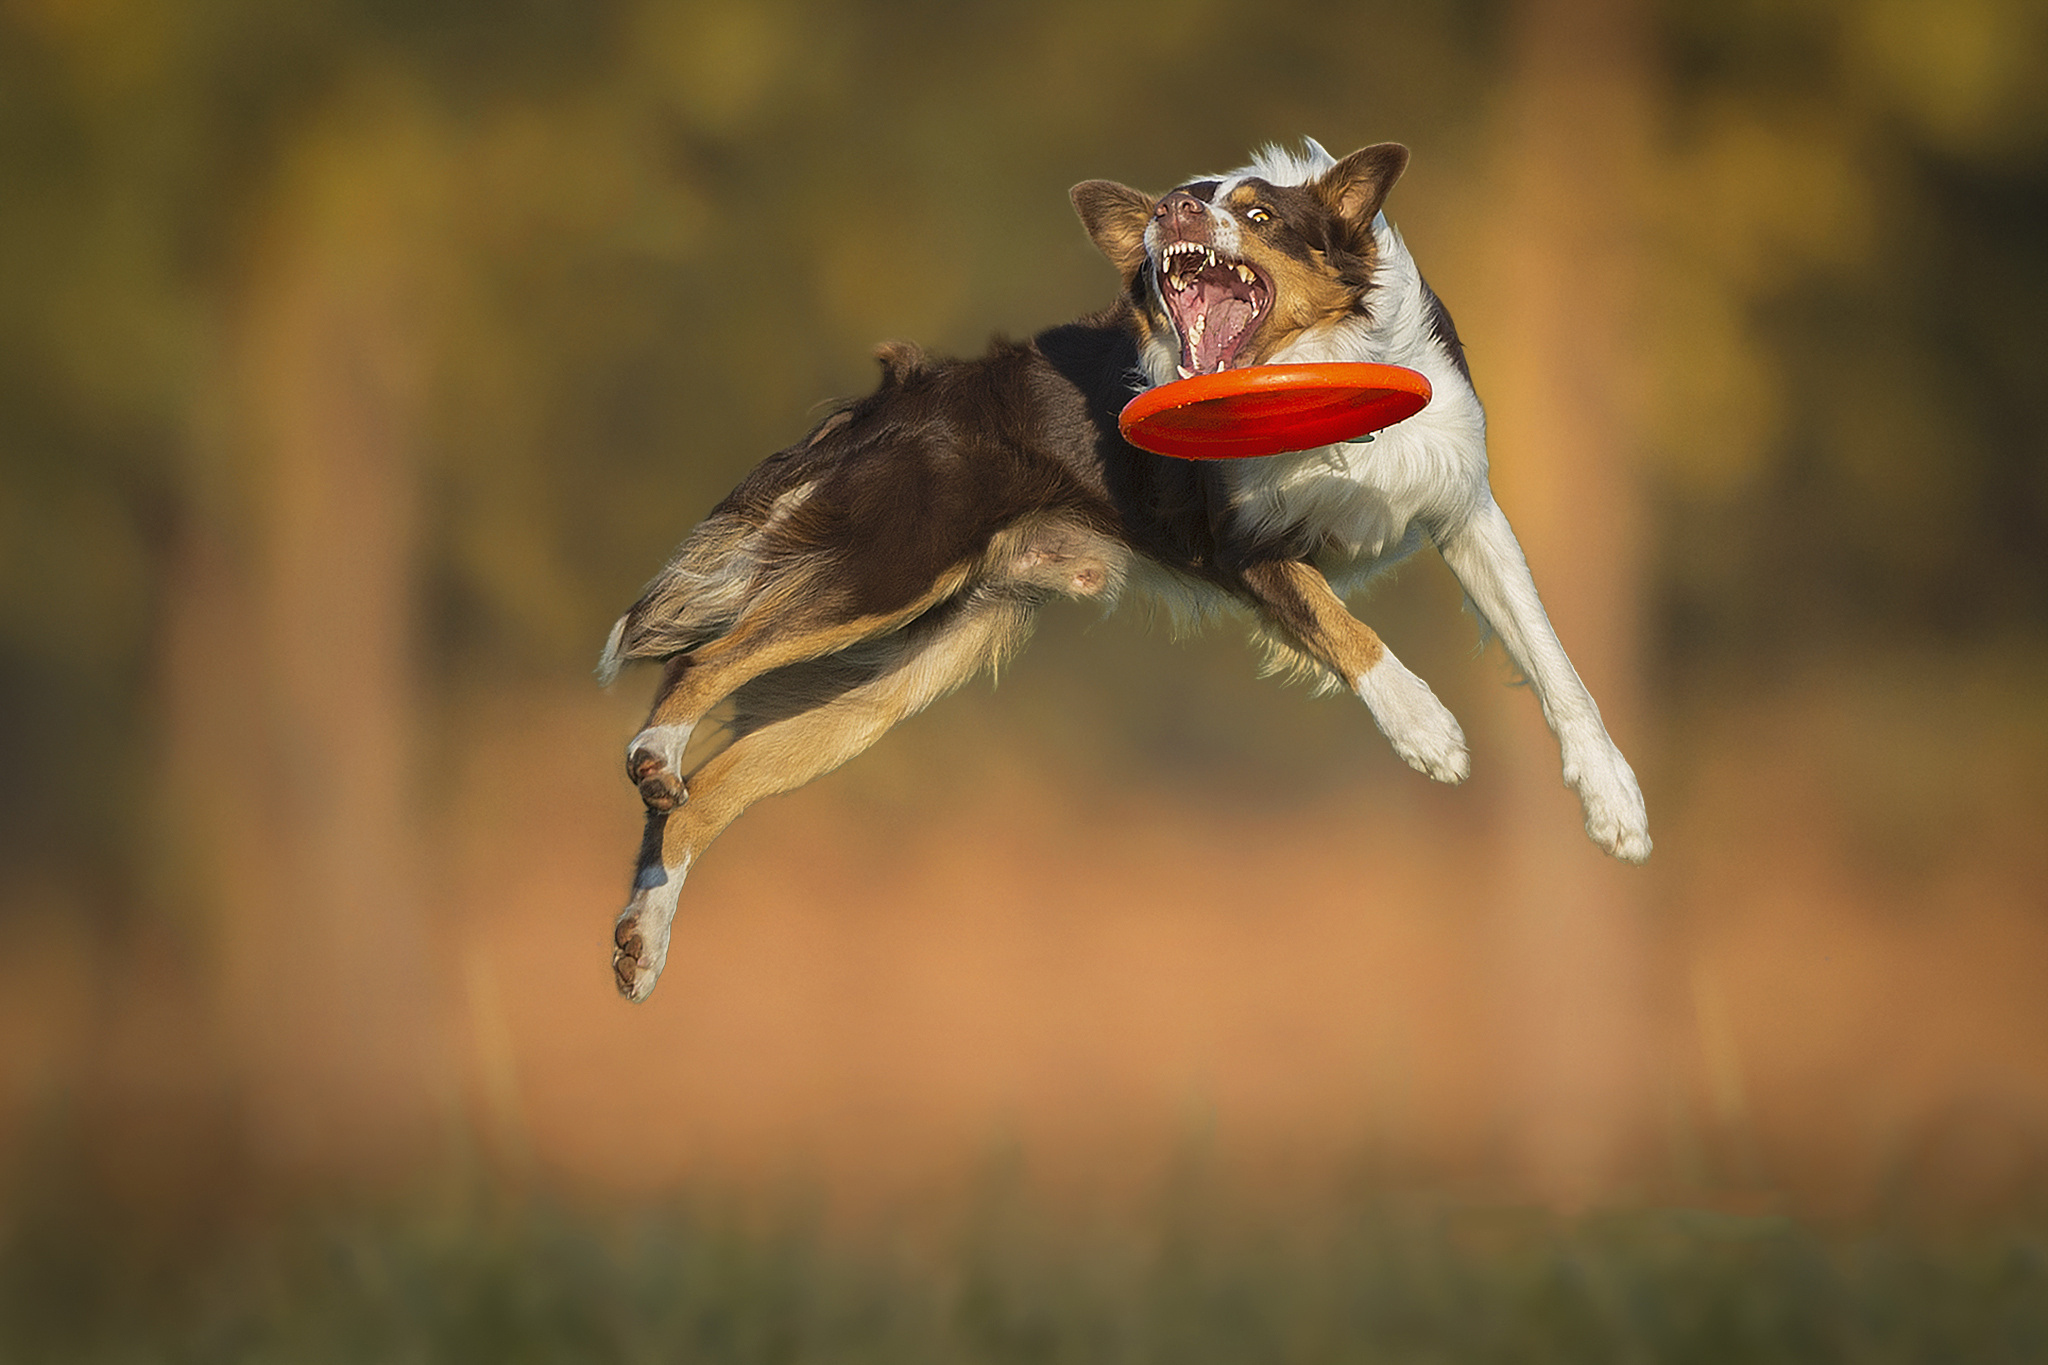 My dog can jump. Бордер-колли. Бордер колли дог фризби. Летающий бордер колли. Собака в прыжке.